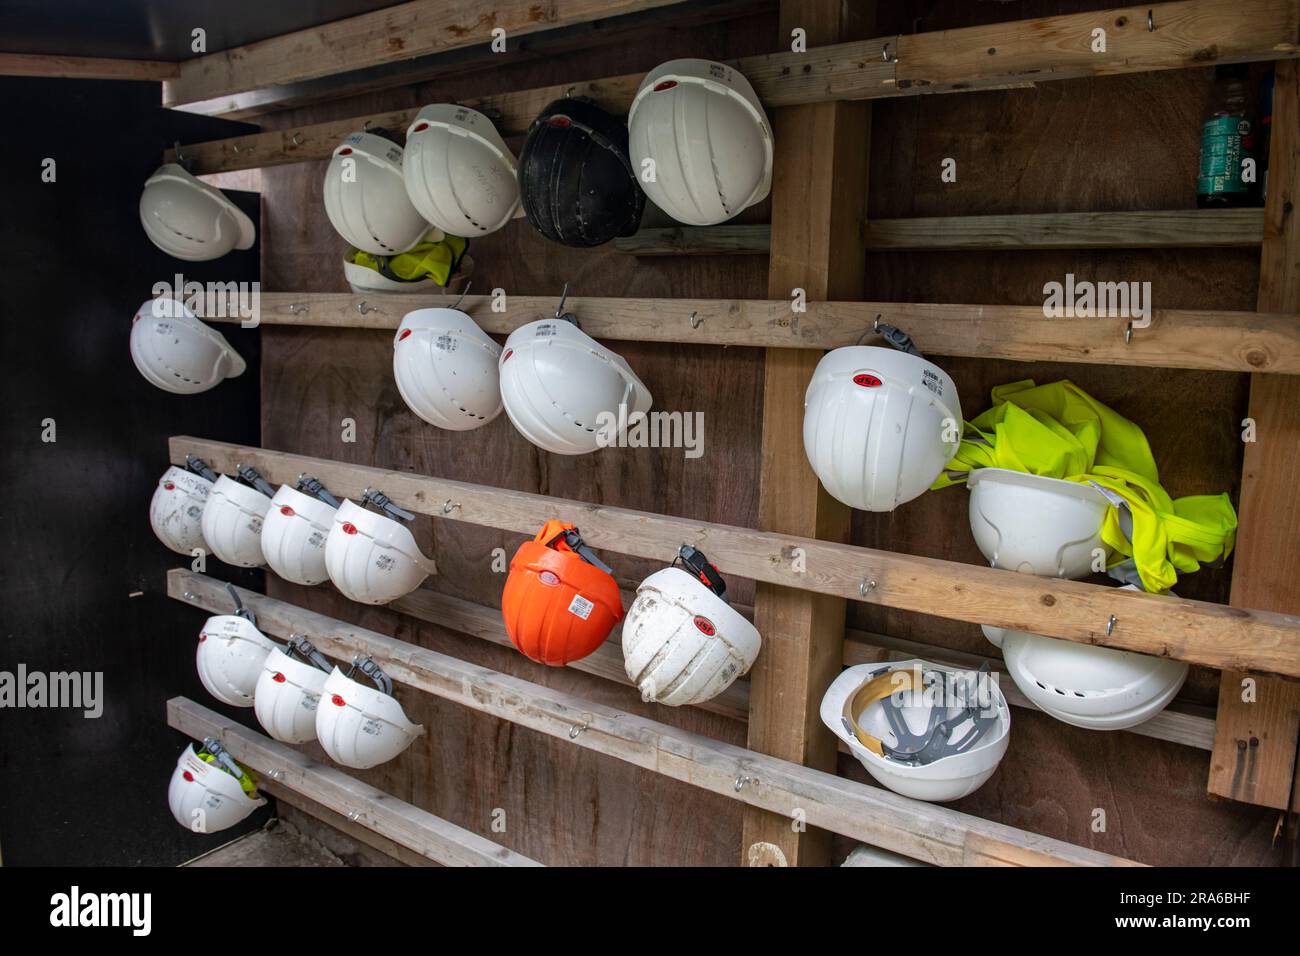 Les casques de sécurité font partie des EPI obligatoires portés sur les chantiers de construction et de construction au Royaume-Uni. Voici quelques étagères avec des chapeaux. Banque D'Images